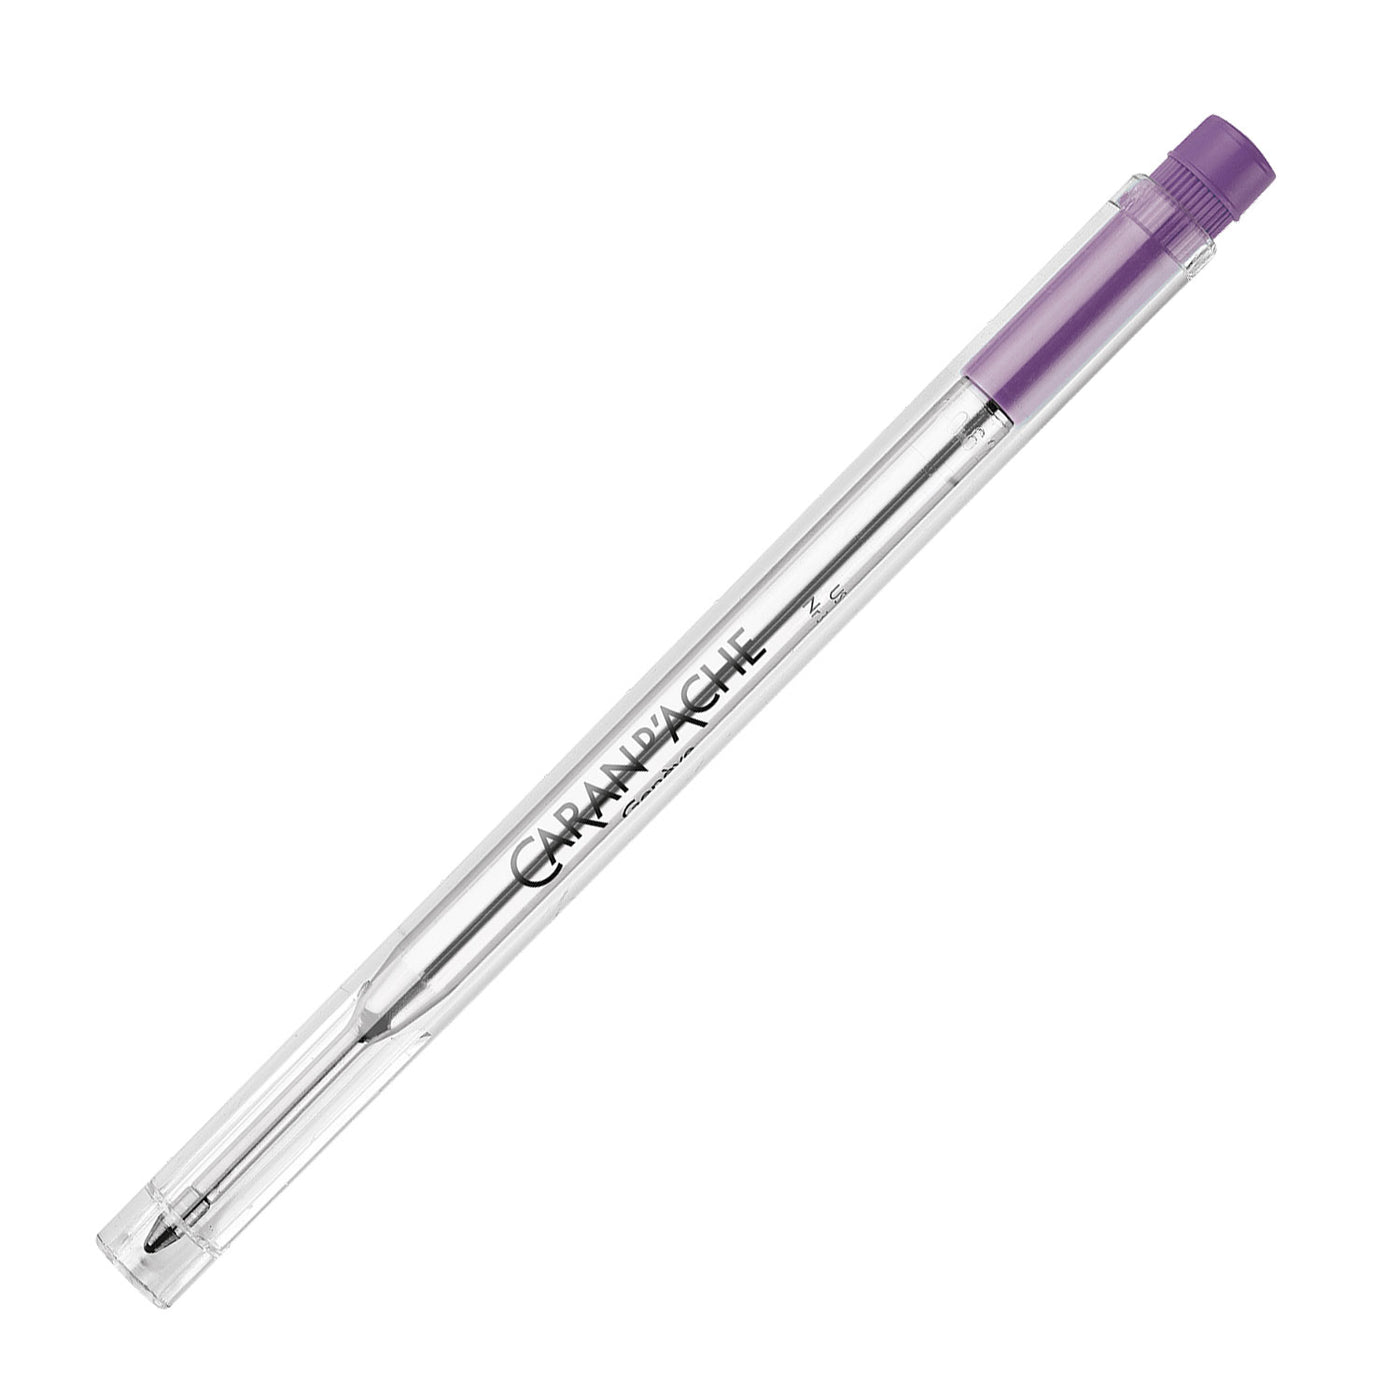 Caran d'Ache 8421.111 Goliath Ball Pen Medium Refill - Violet 1